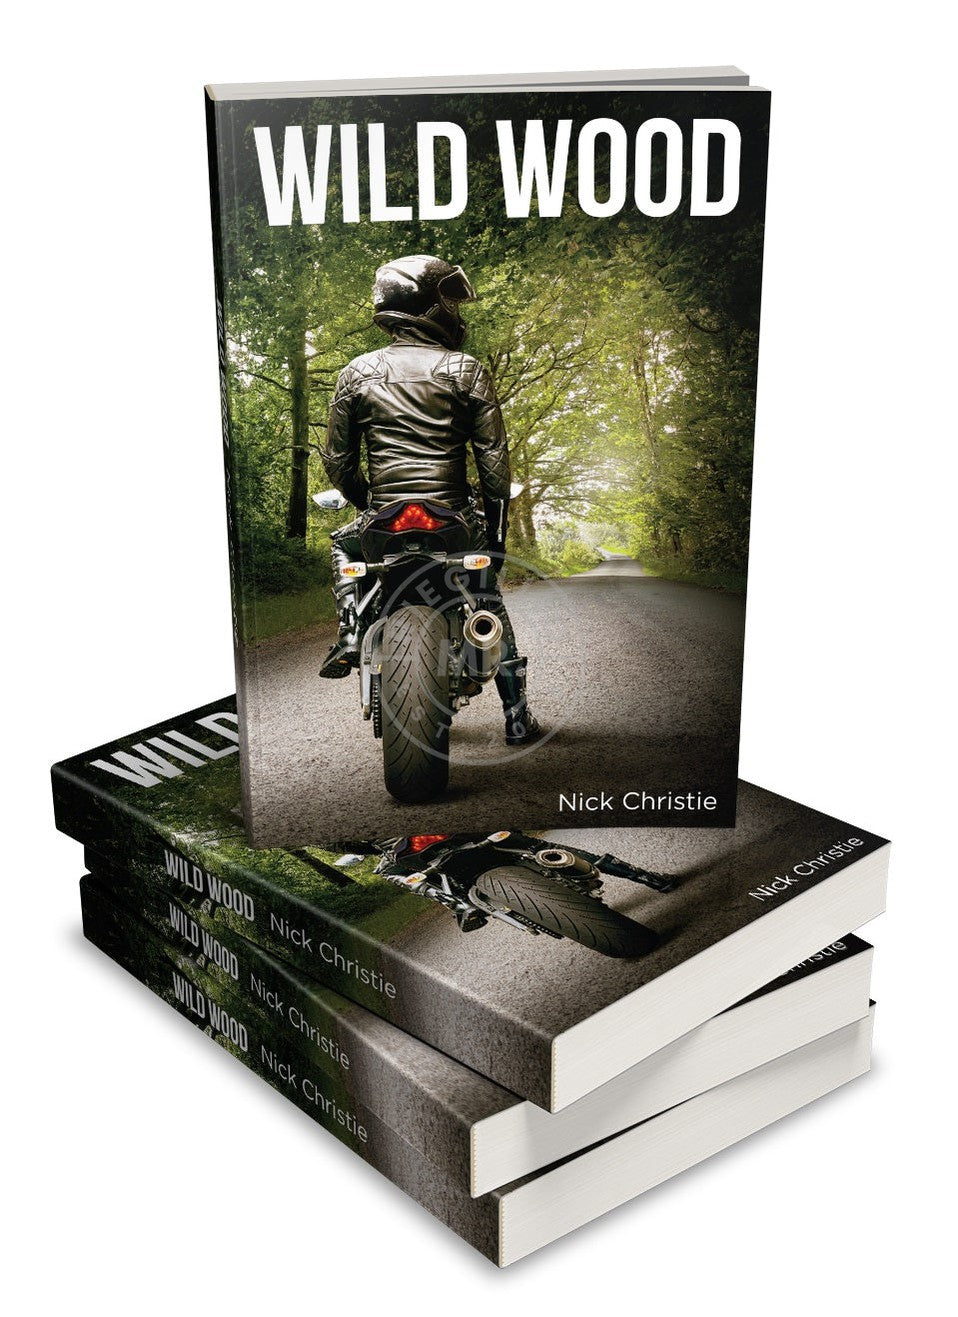 WILD WOOD by Nick Christie-at MR. Riegillio